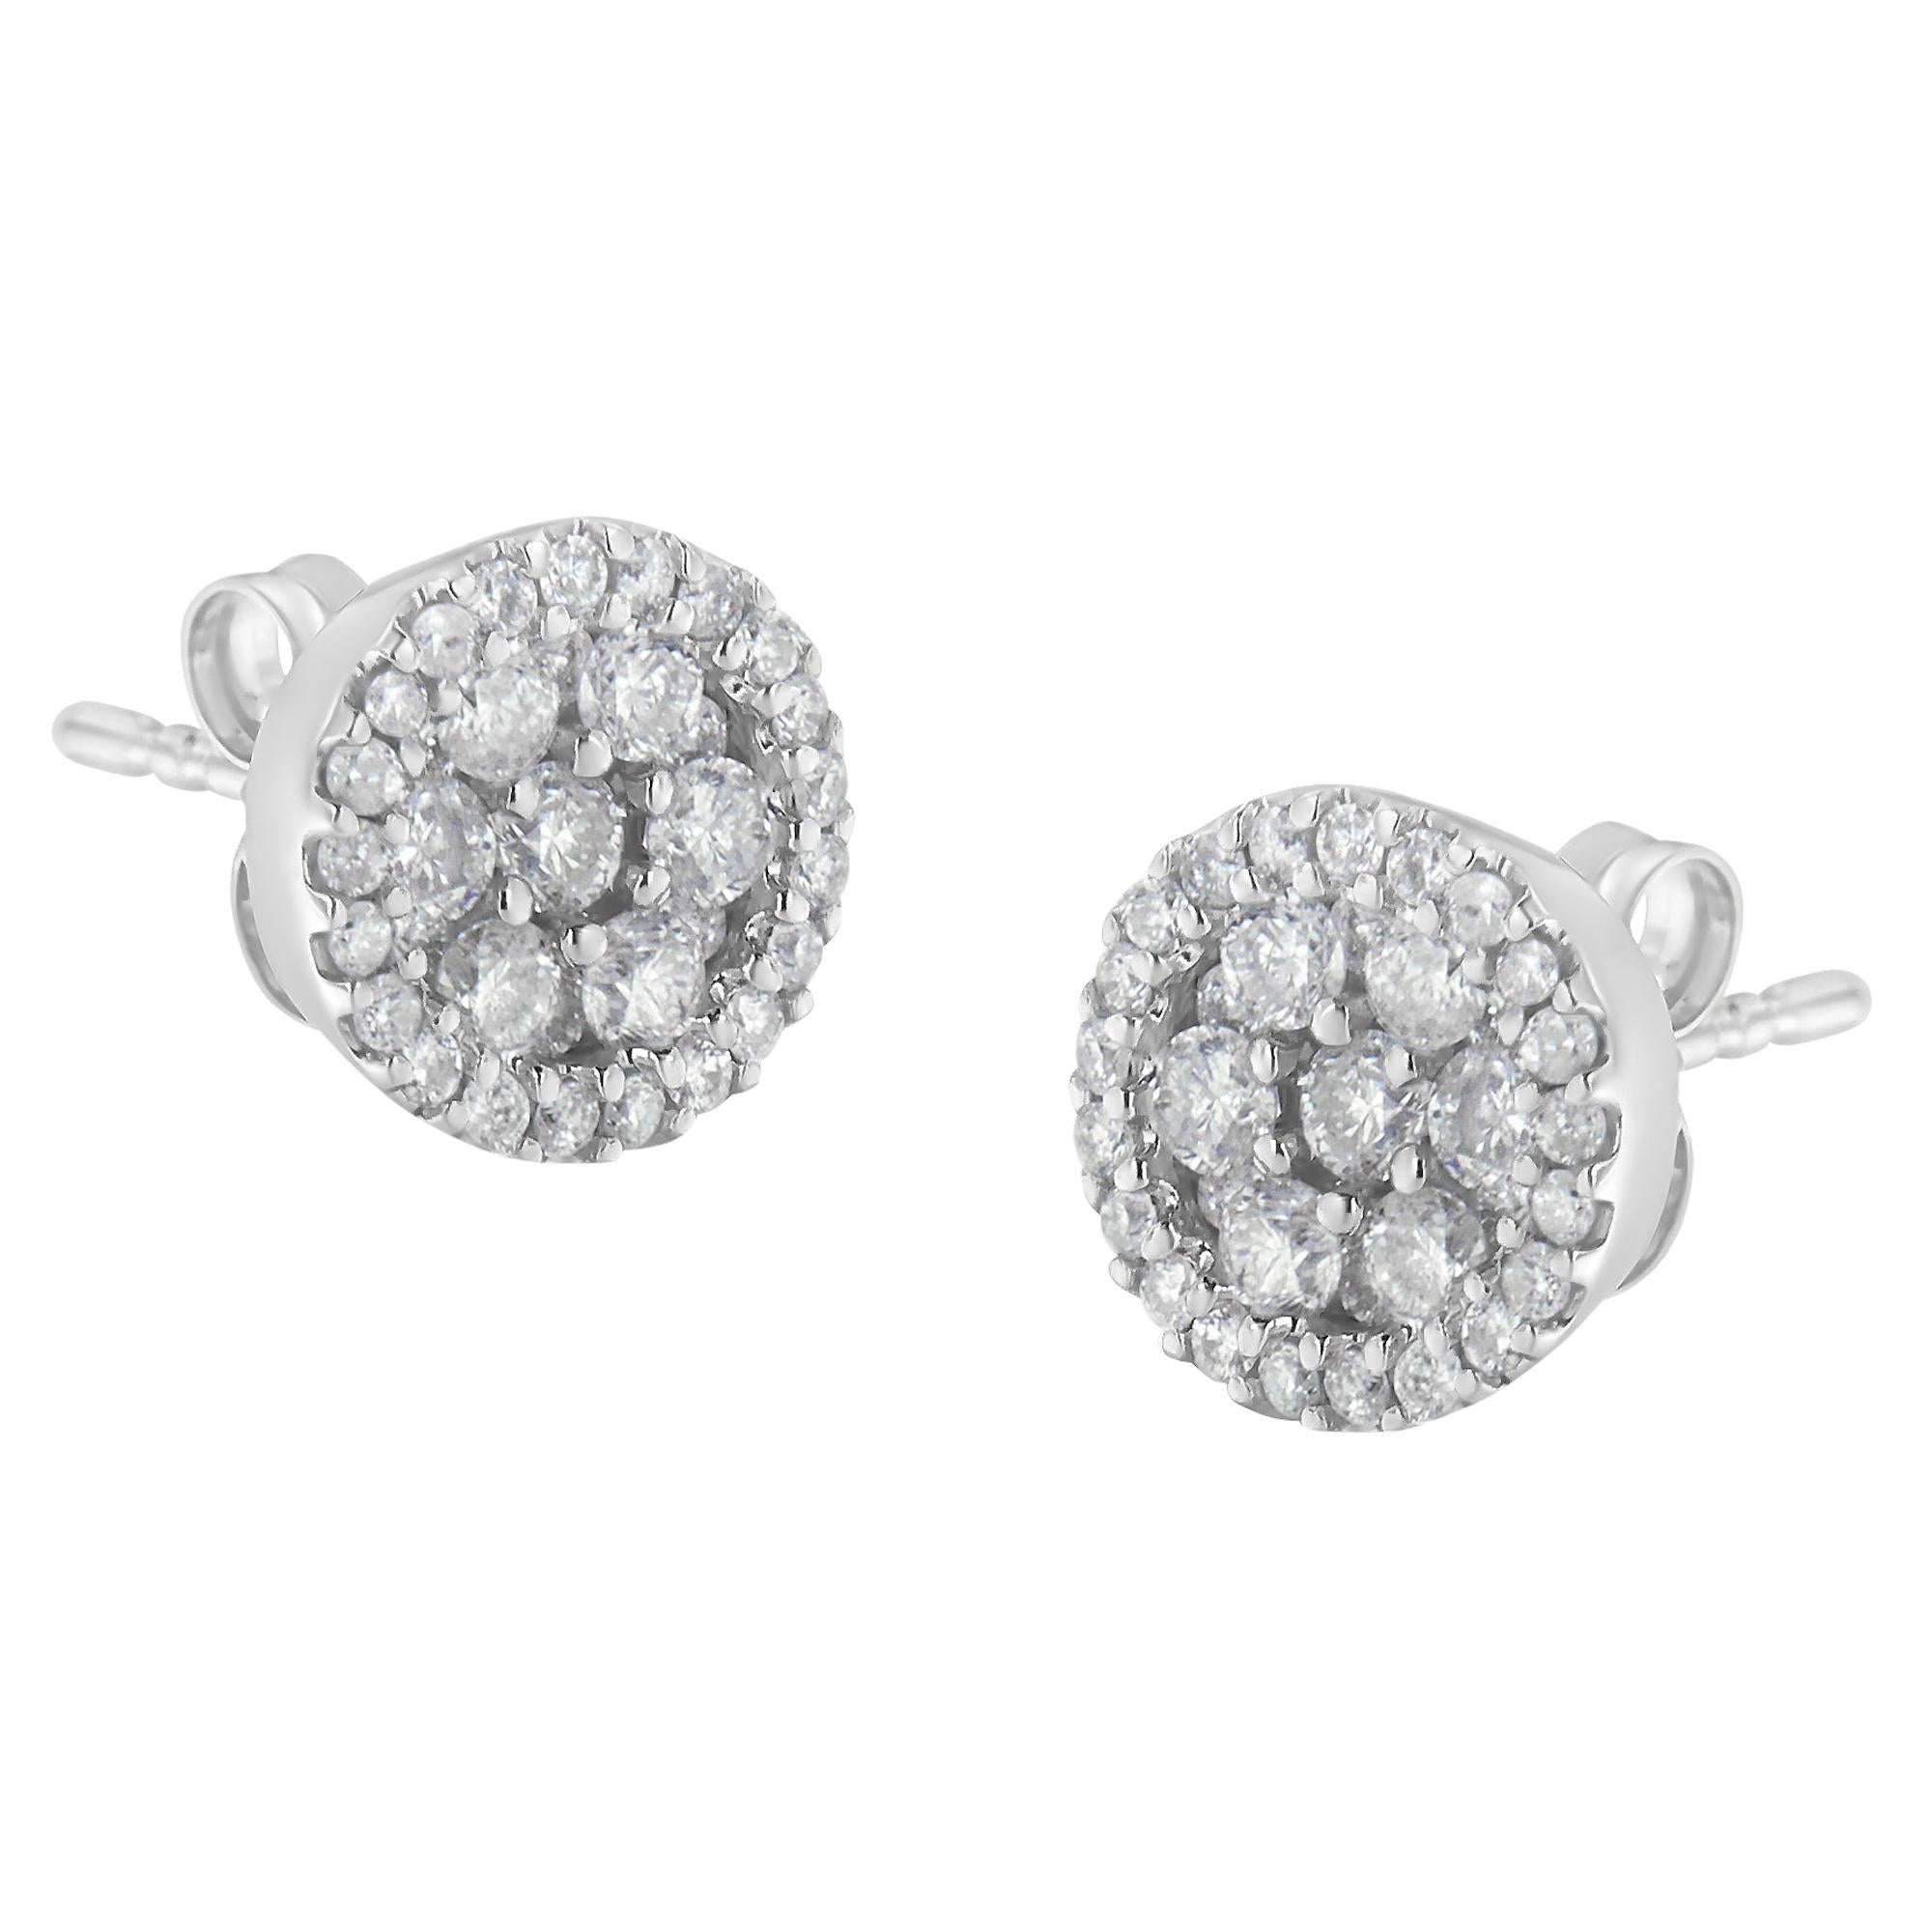 14K White Gold 1.0 Carat Diamond Stud Earrings For Sale